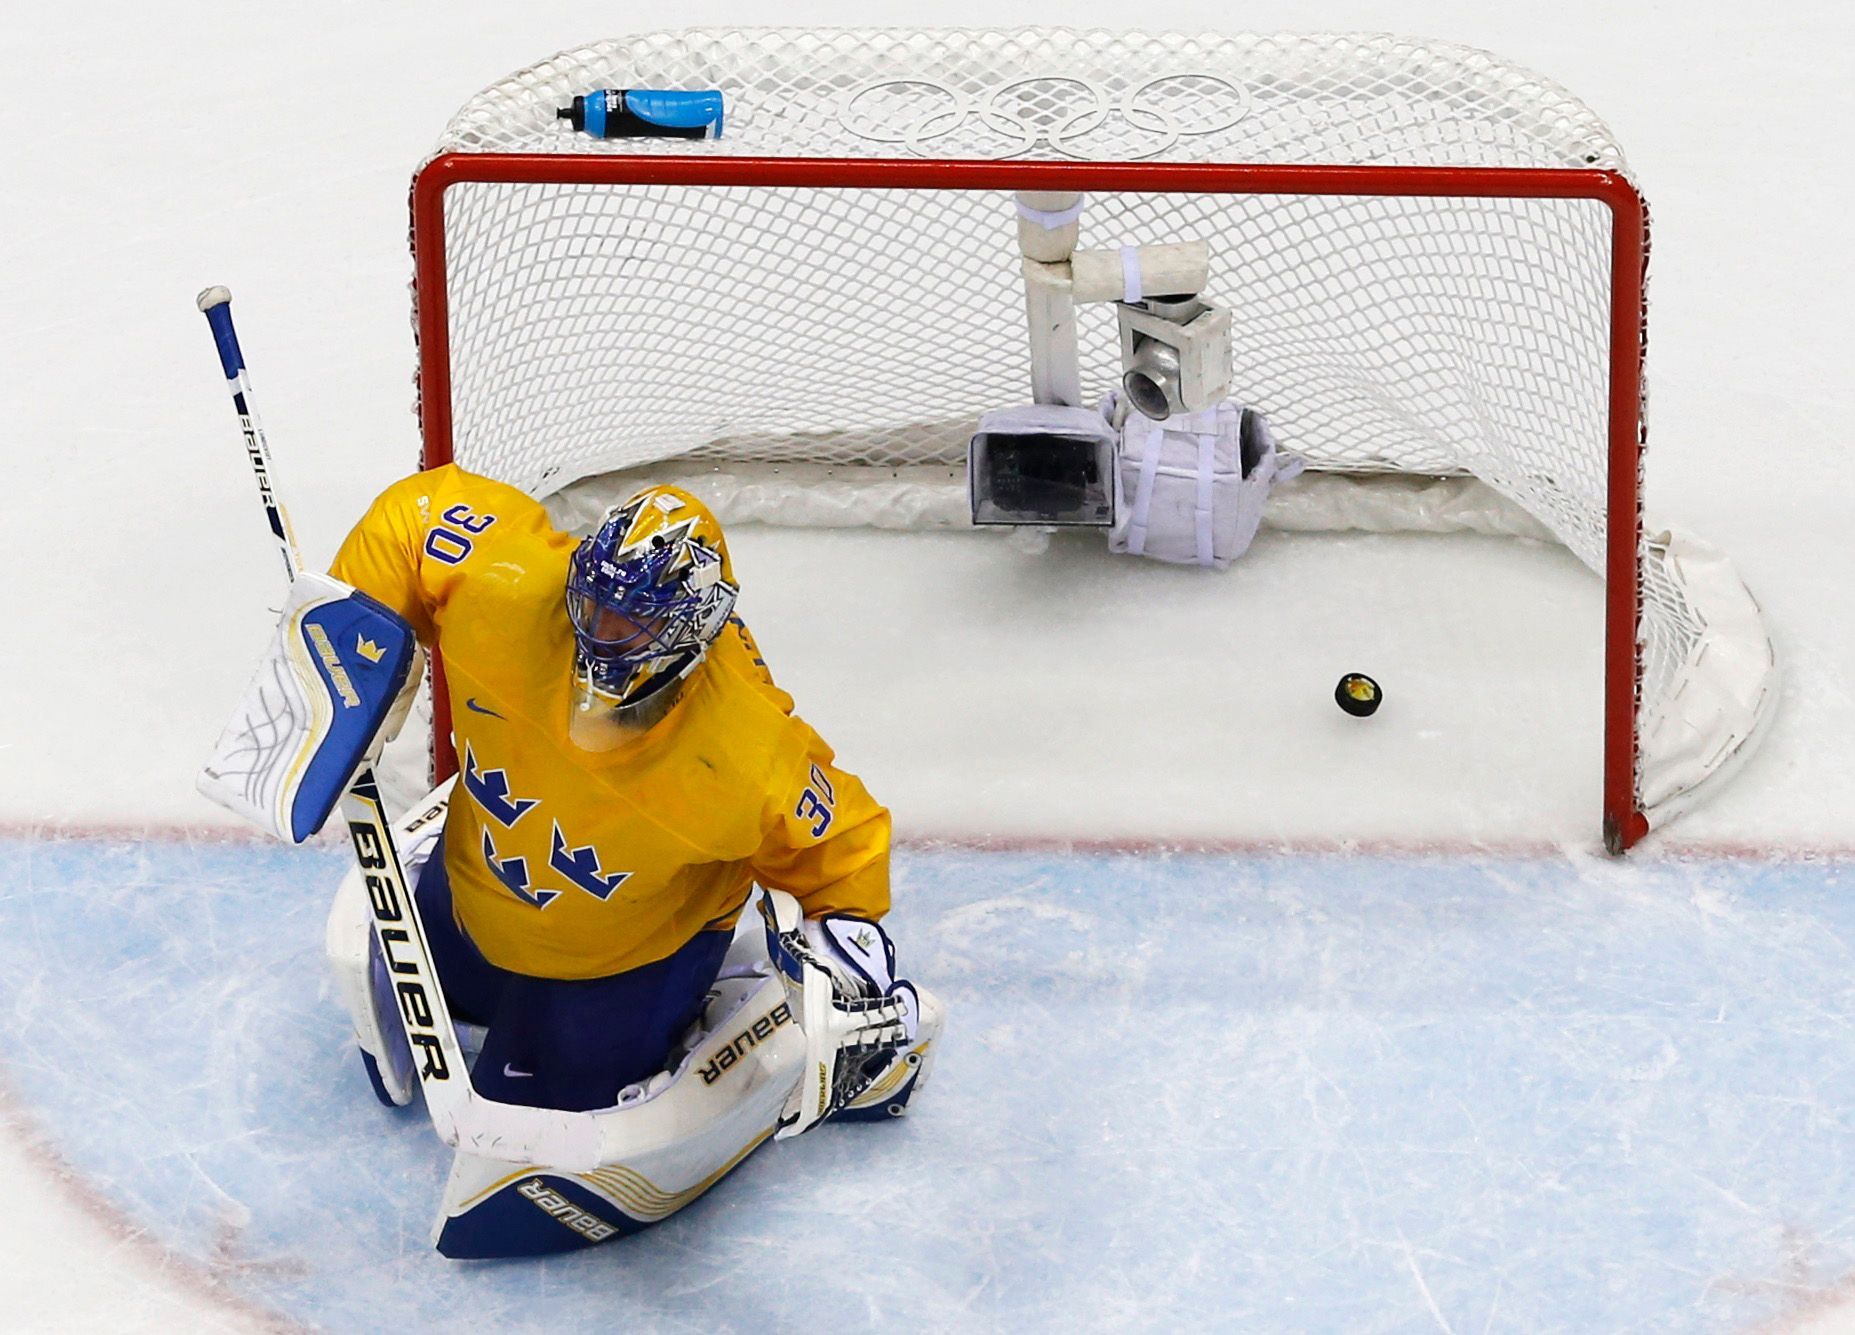 Kanada-Švédsko, finále: Henrik Lundqvist dostává gól na 0:3